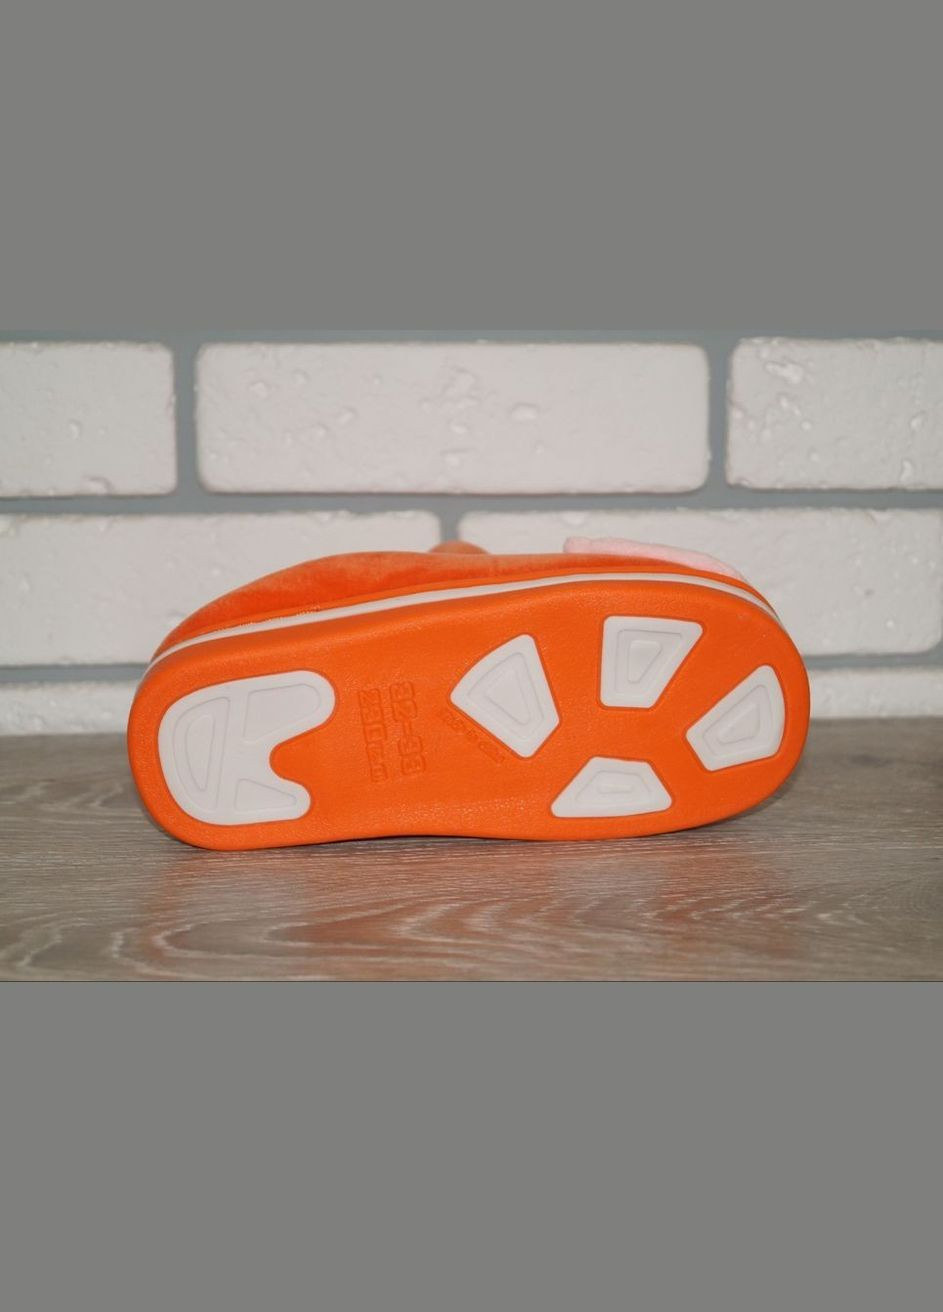 Оранжевые тапочки для девочки с милым котиком оранжевые Lion с аппликацией, с вышивкой